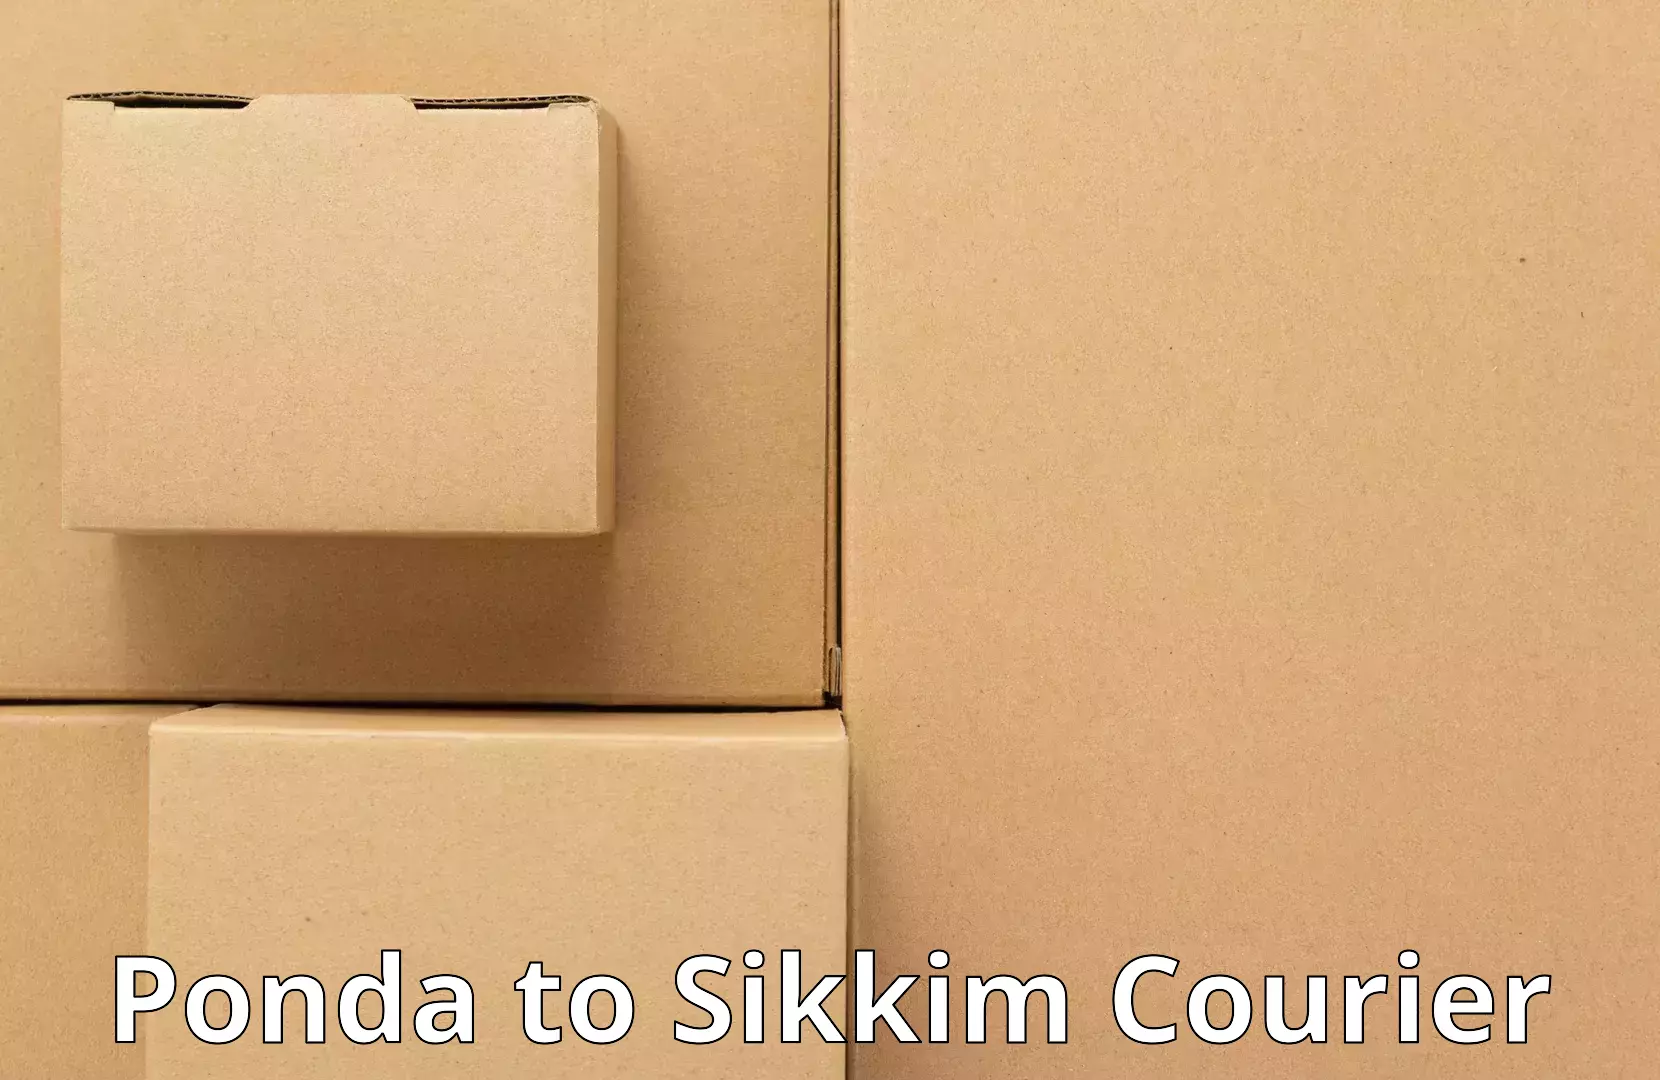 Furniture transport company Ponda to Sikkim